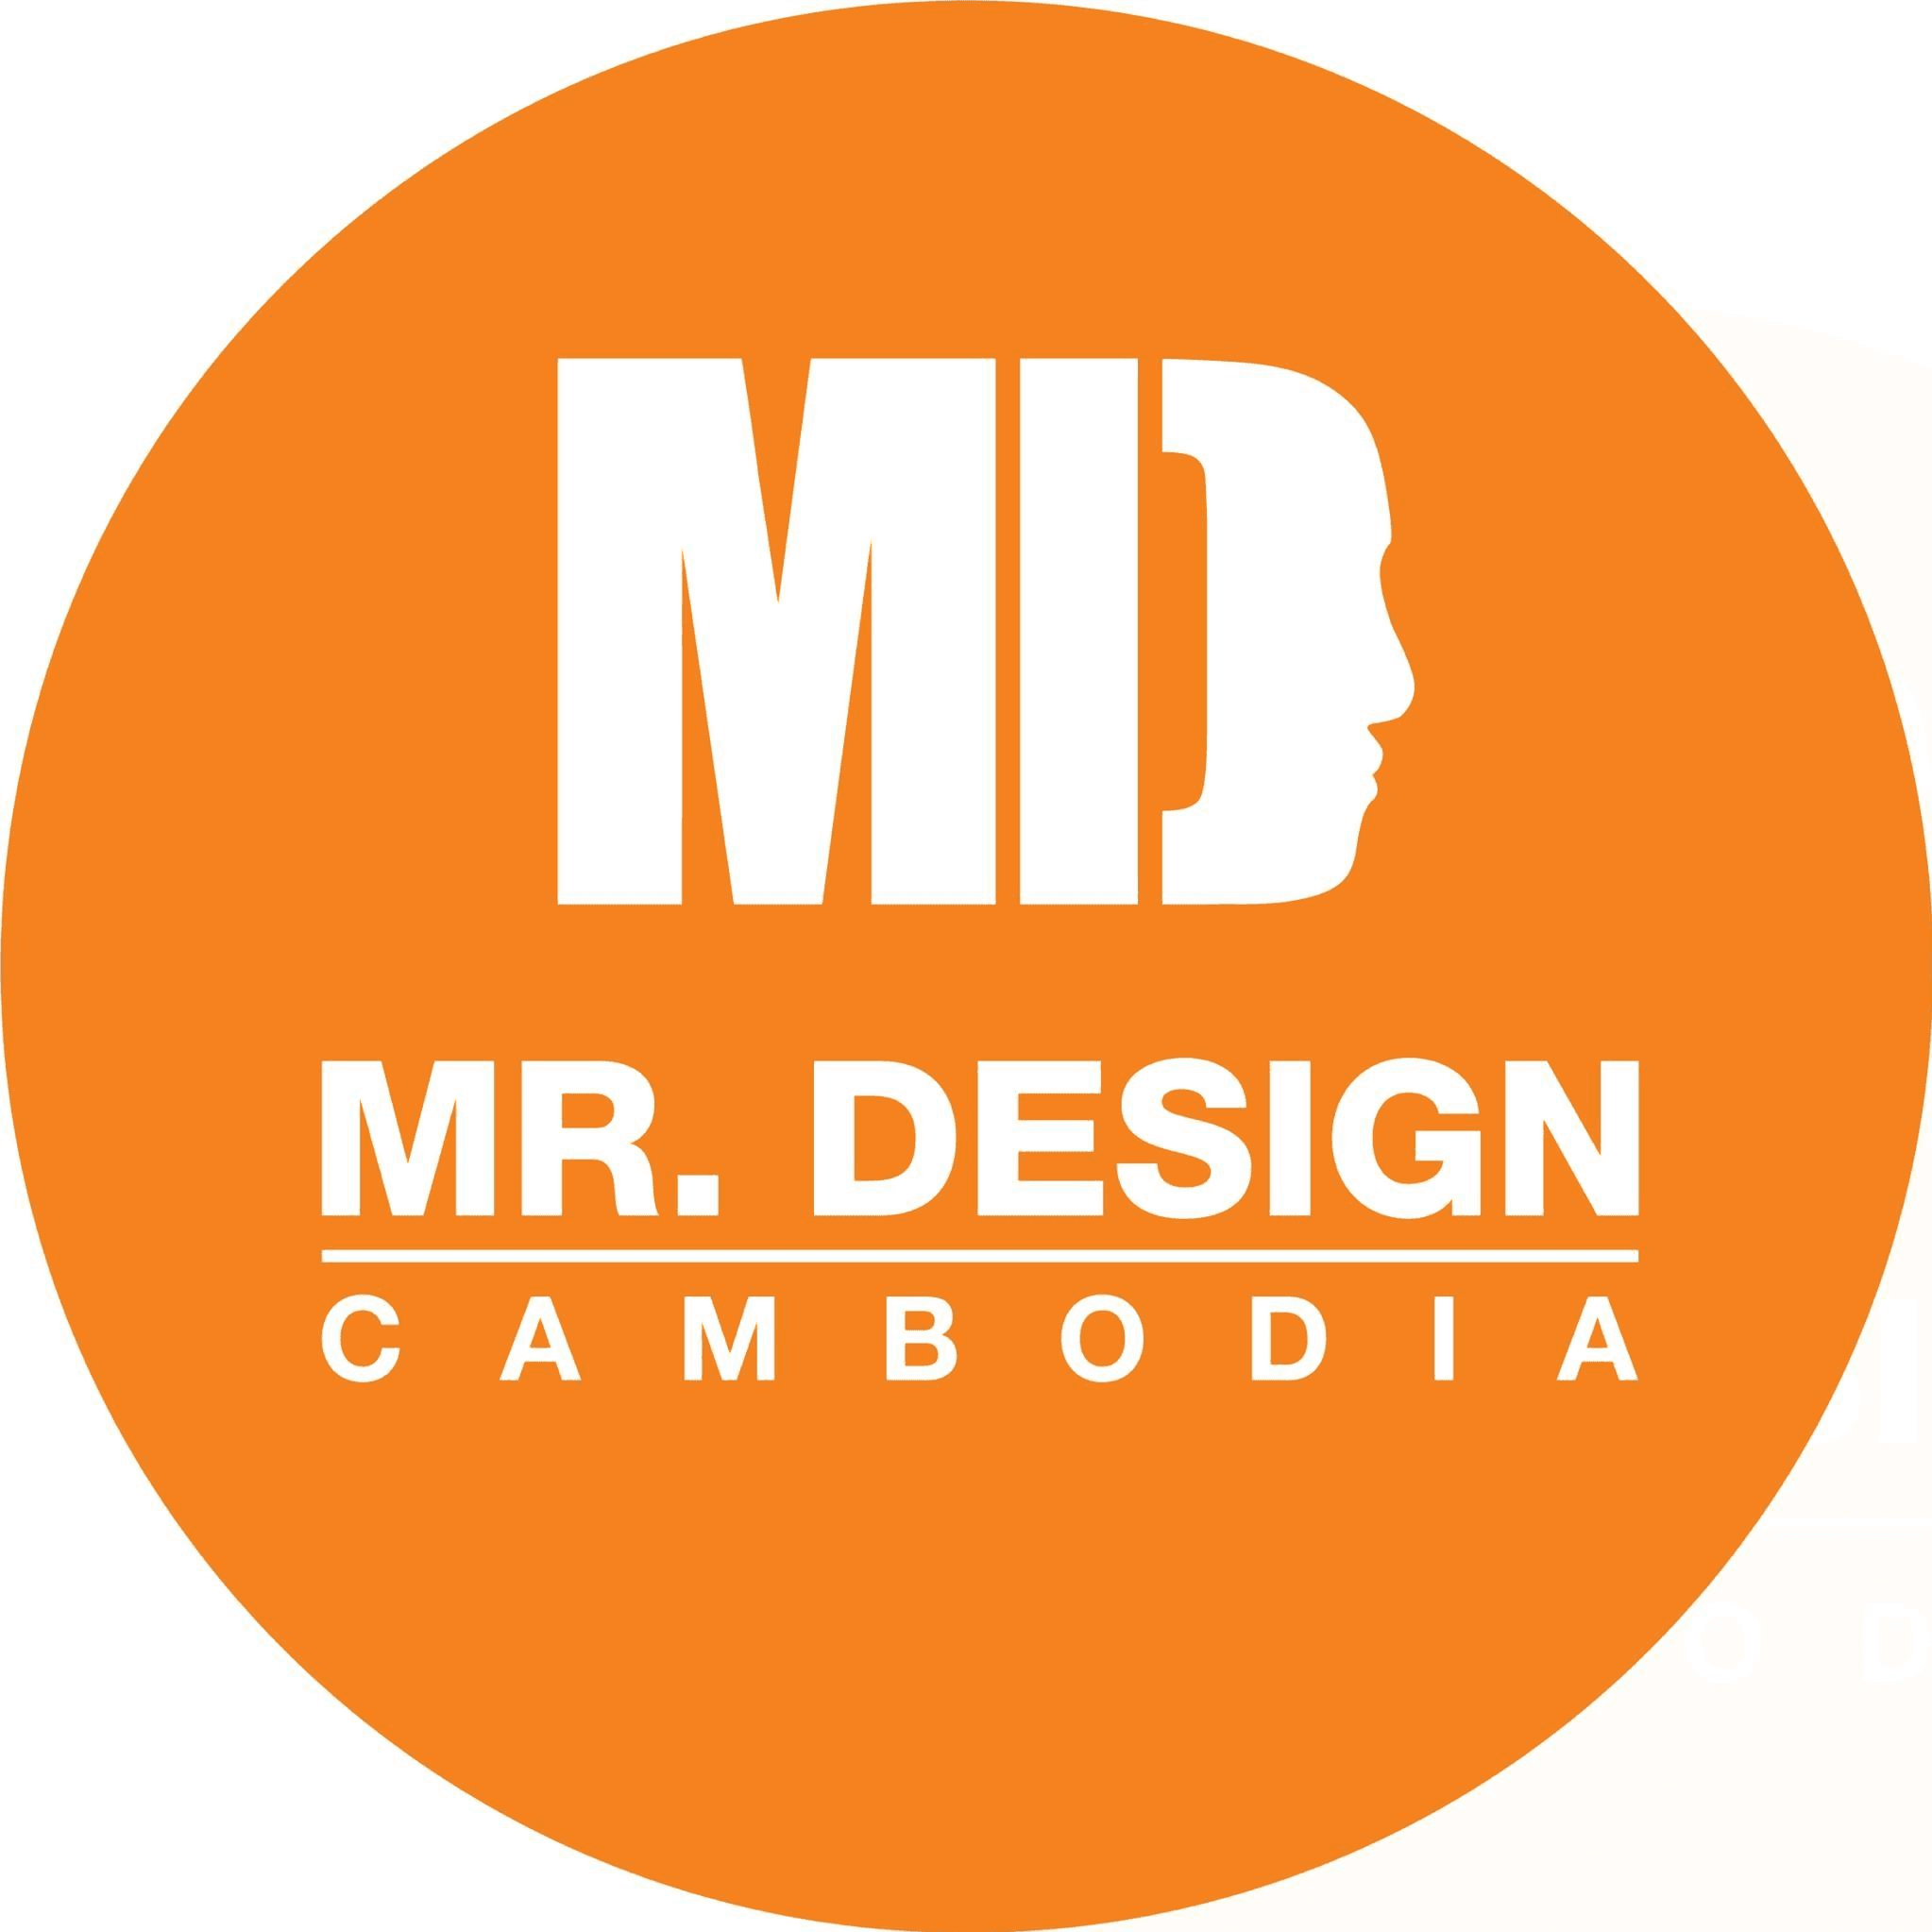 Mr. Design Cambodia